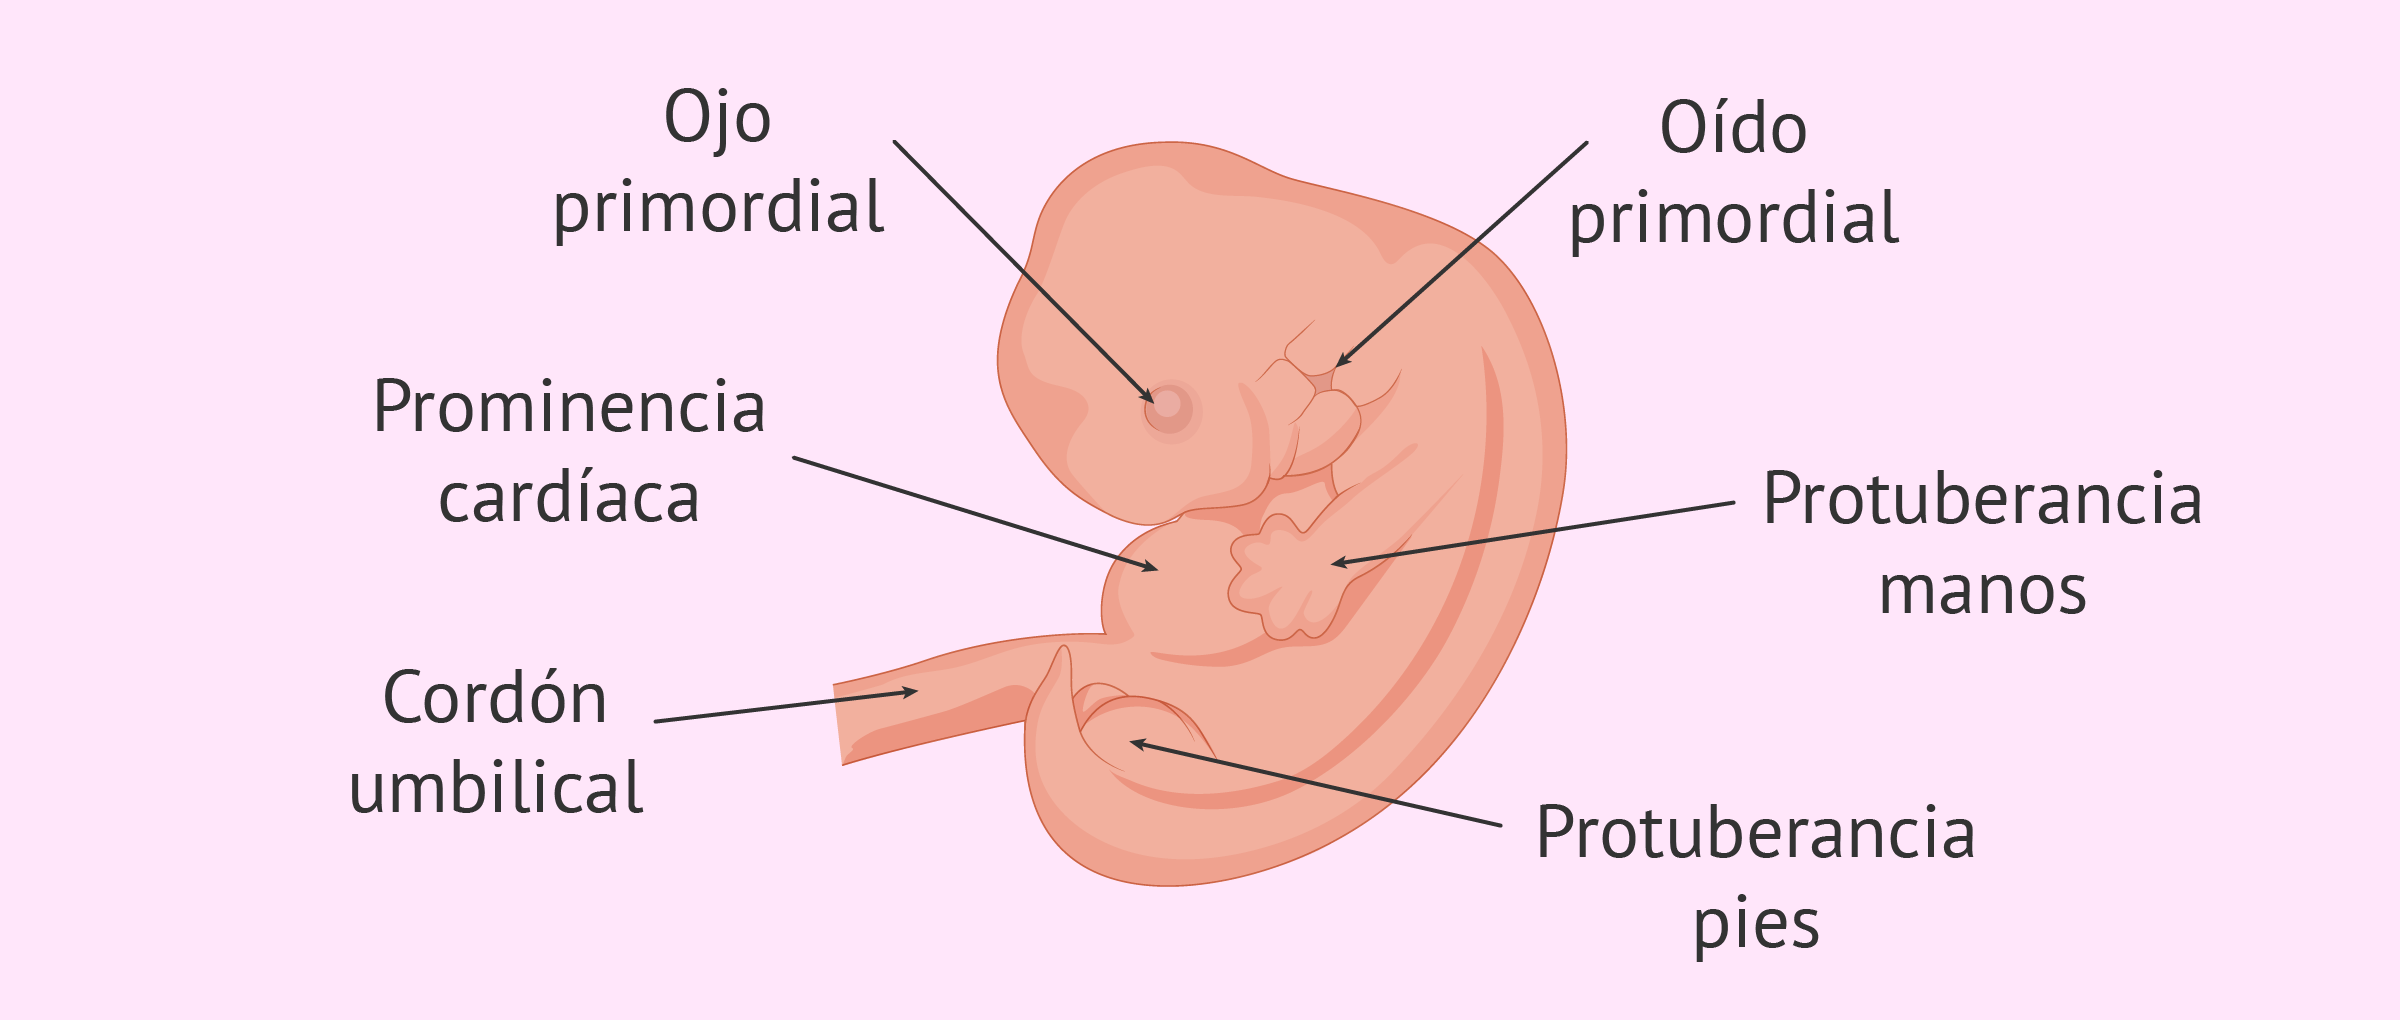 Semana 6 de embarazo: evolución del embrión y